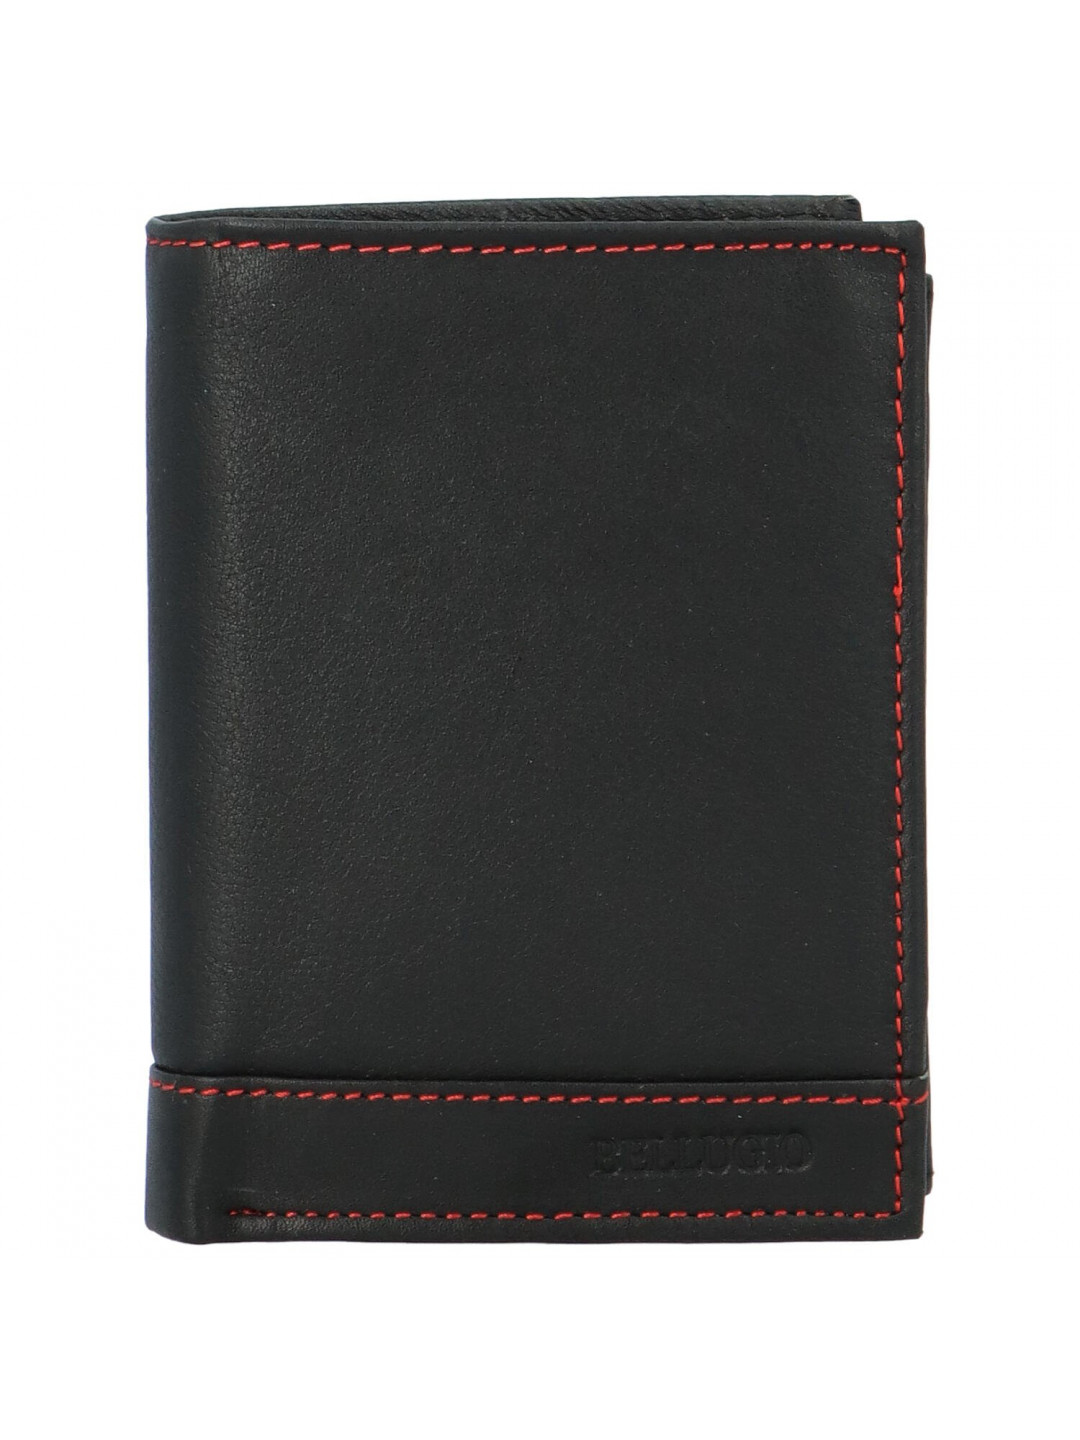 Pánská kožená peněženka na výšku Bellugio Deamon černo-červená